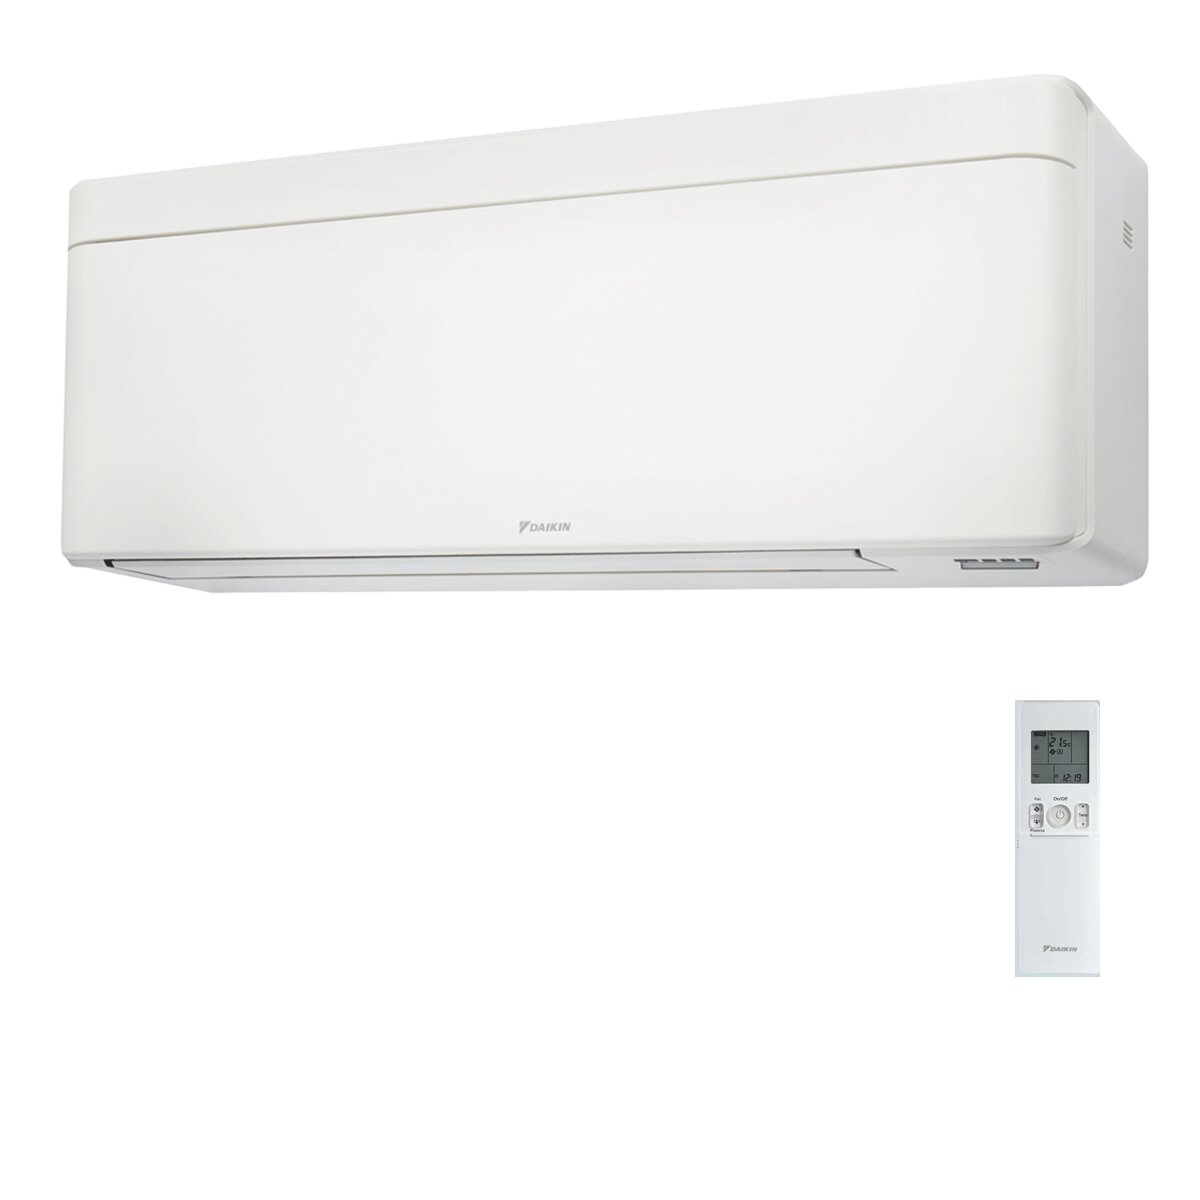 Daikin Stylish White trial split air conditioner 12000+12000+18000 BTU inverter A++ wifi external unit 7.4 kW